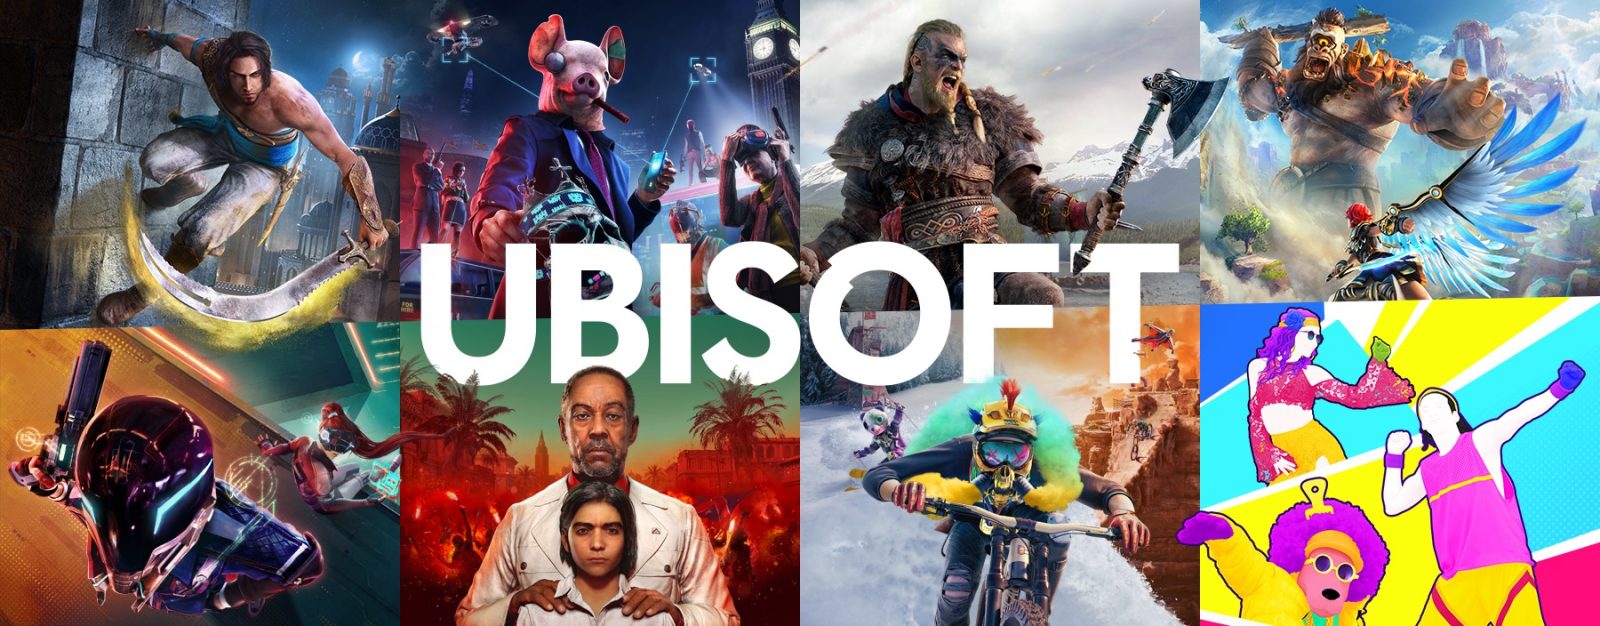 育碧订阅服务UPLAY+将更名为Ubisoft+，将可在云游戏平台游玩